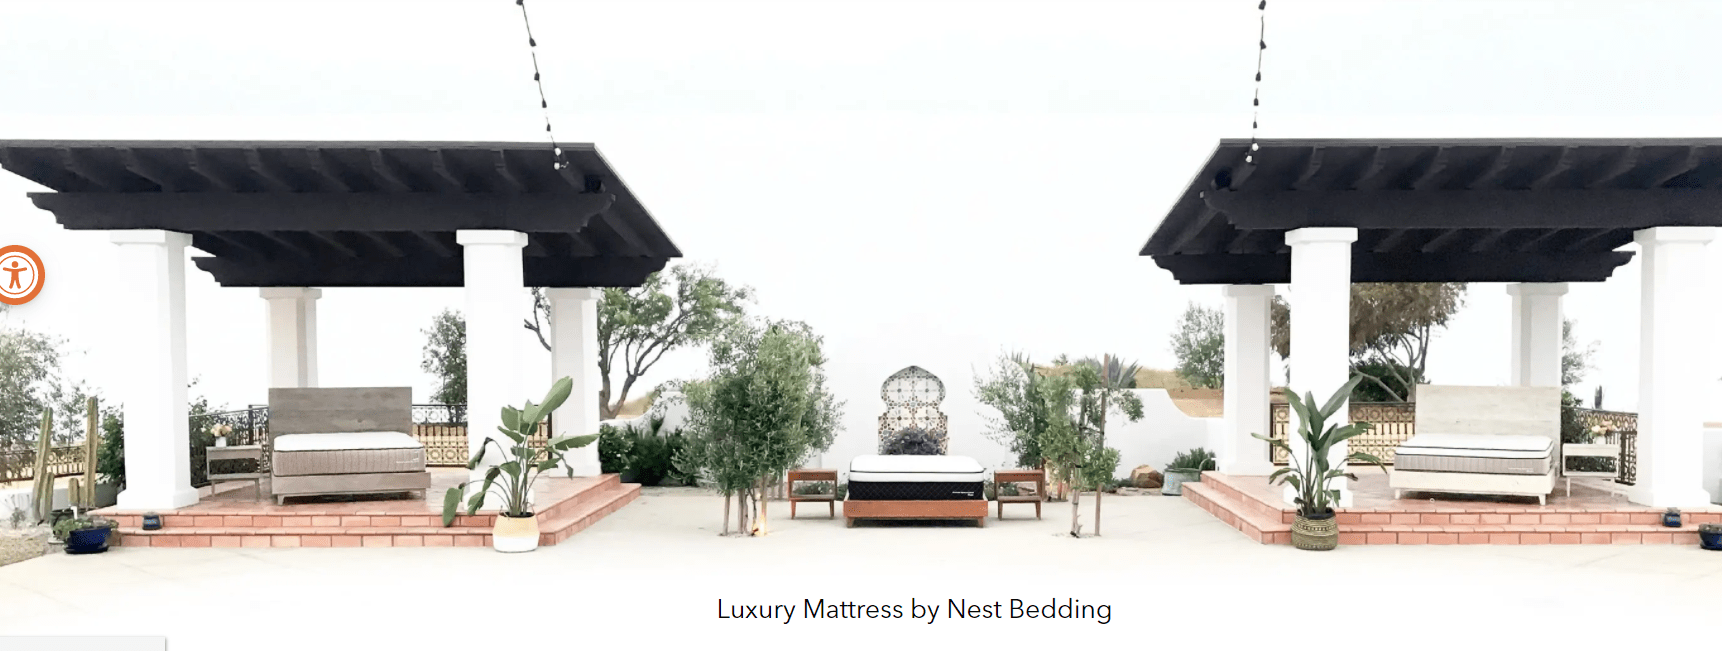 Nest Bedding Luxury Mattress